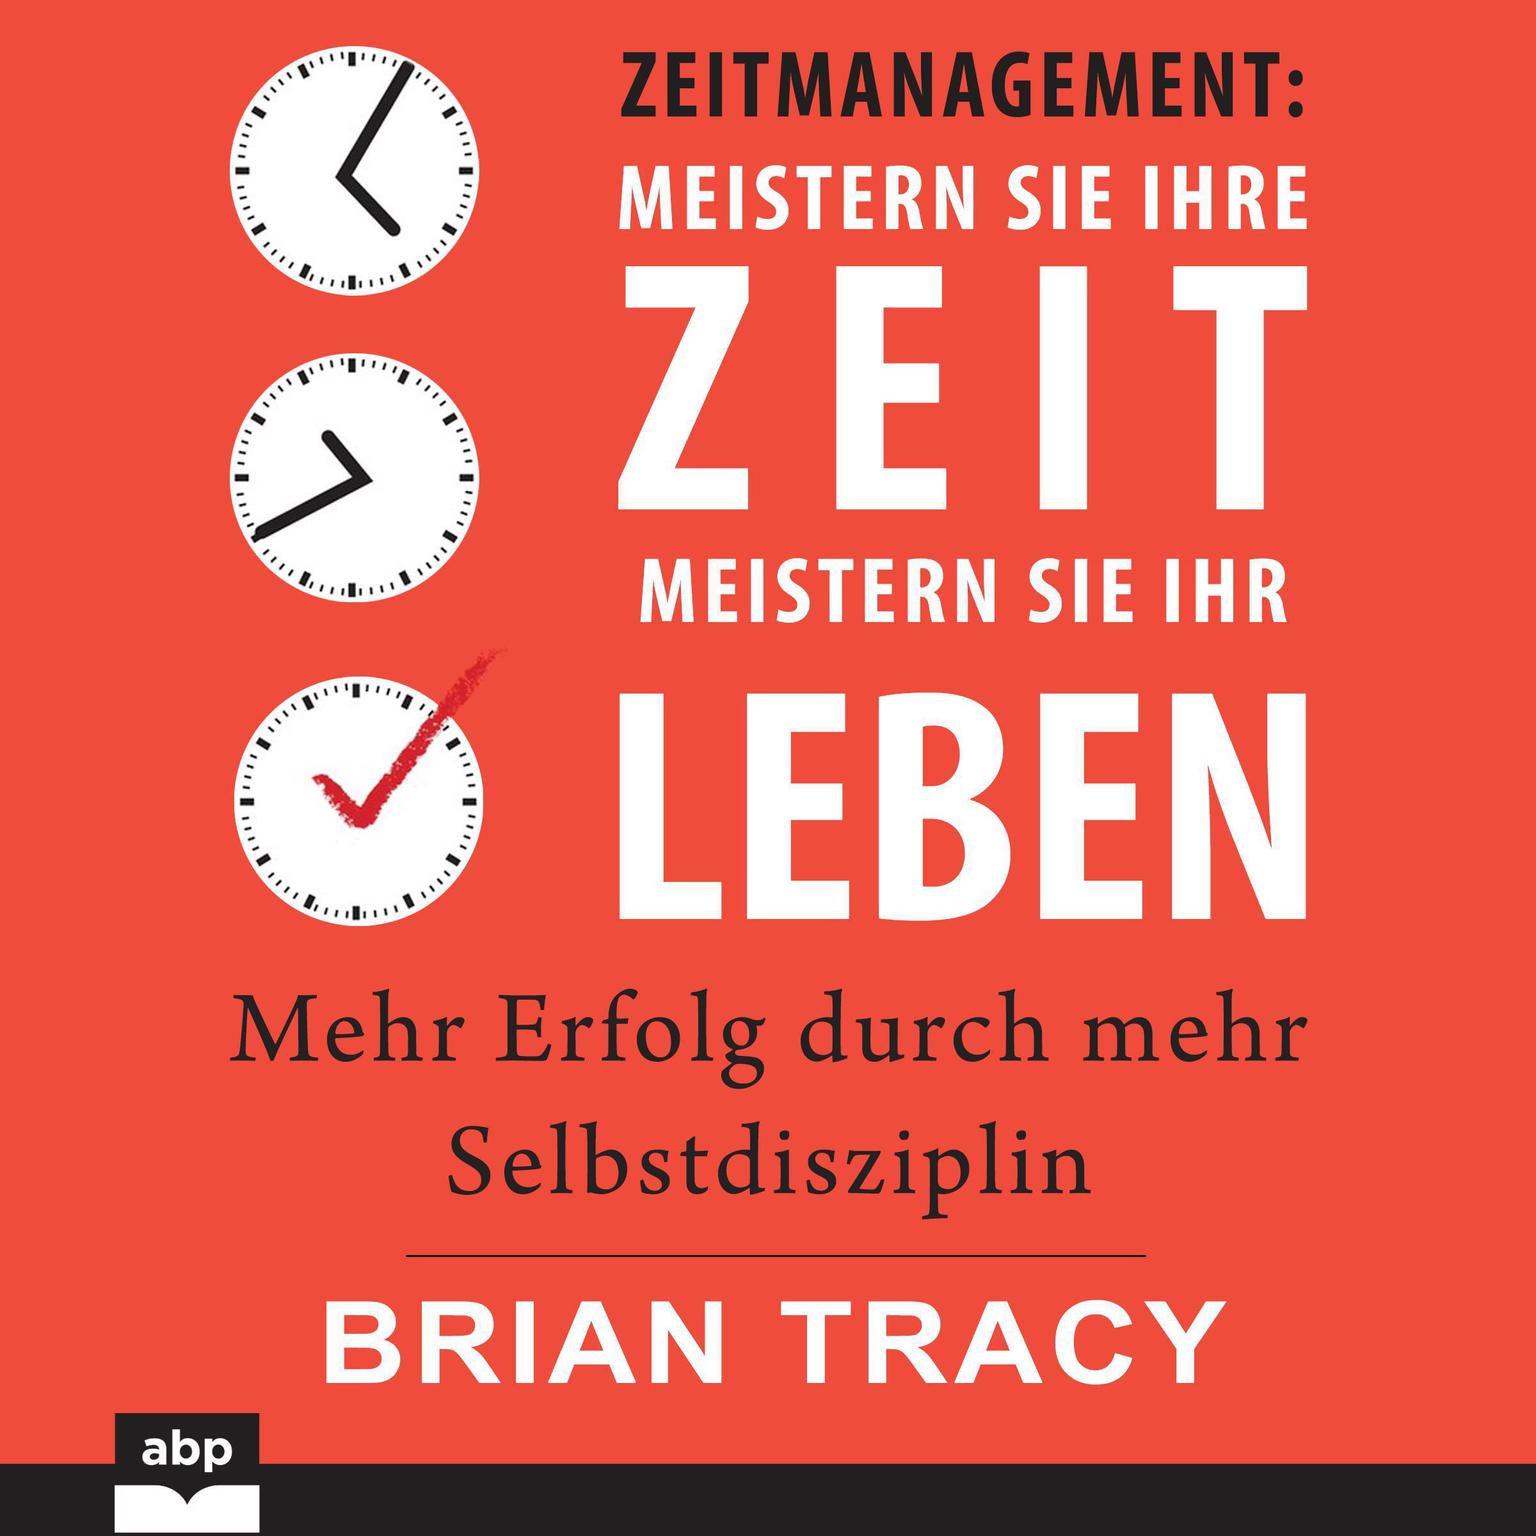 Zeitmanagement - Meistern Sie Ihre Zeit, meistern Sie Ihr Leben: Mehr Erfolg durch mehr Selbstdisziplin Audiobook, by Brian Tracy